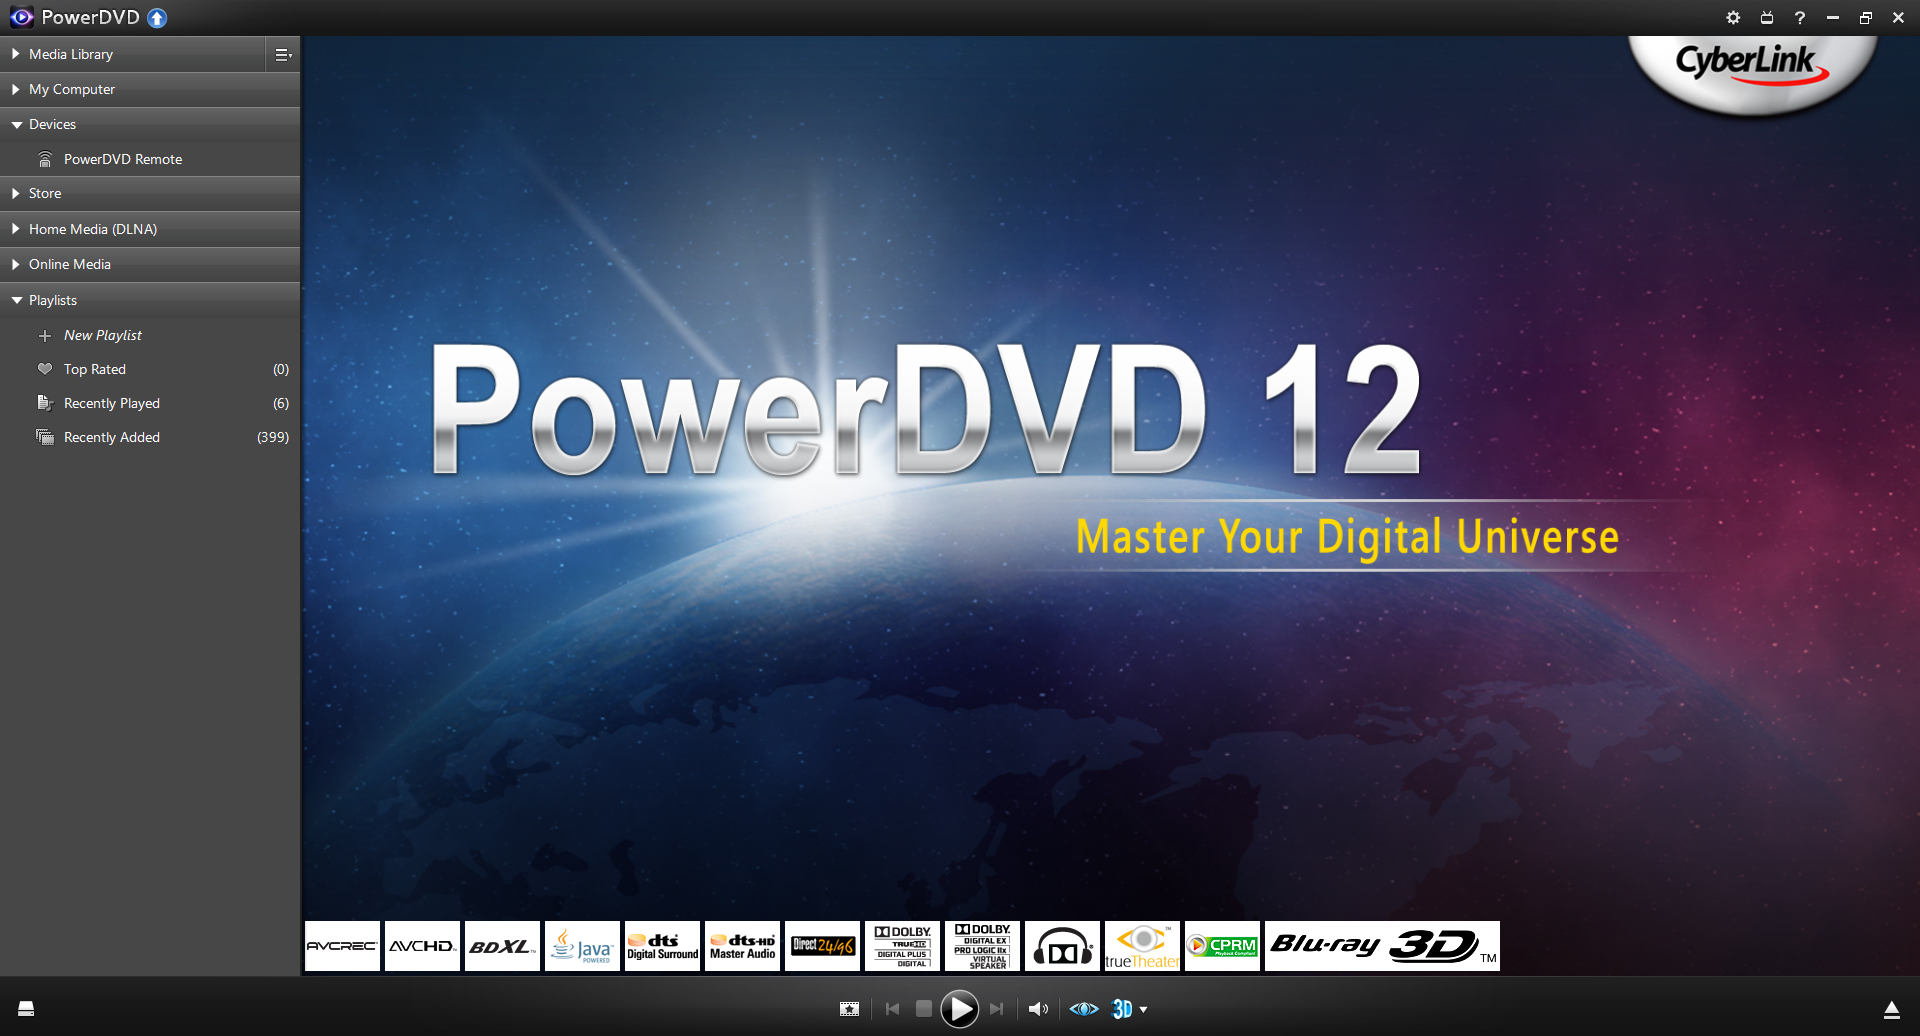 powerdvd 12